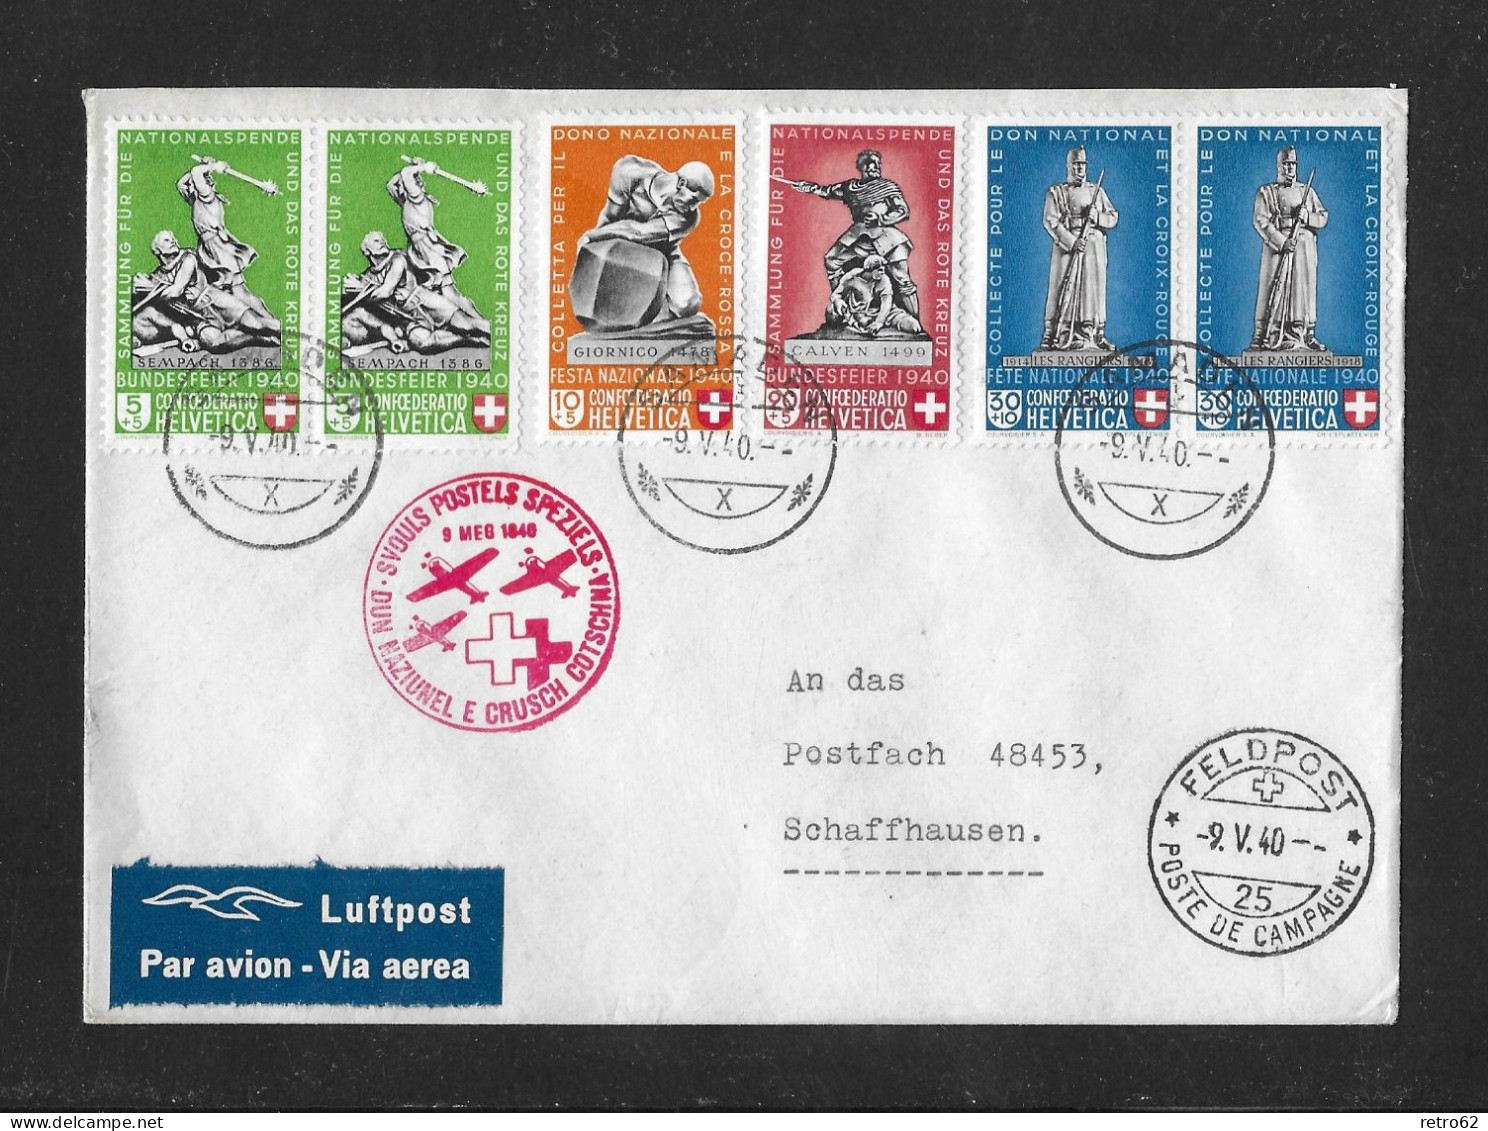 1940 GESCHICHTLICHE MOTIVE ► Luftpost Brief Nationalspende Rotes Kreuz, Postsammelstelle SAMADEN   ►SLH-SF 40.2q◄ - Covers & Documents